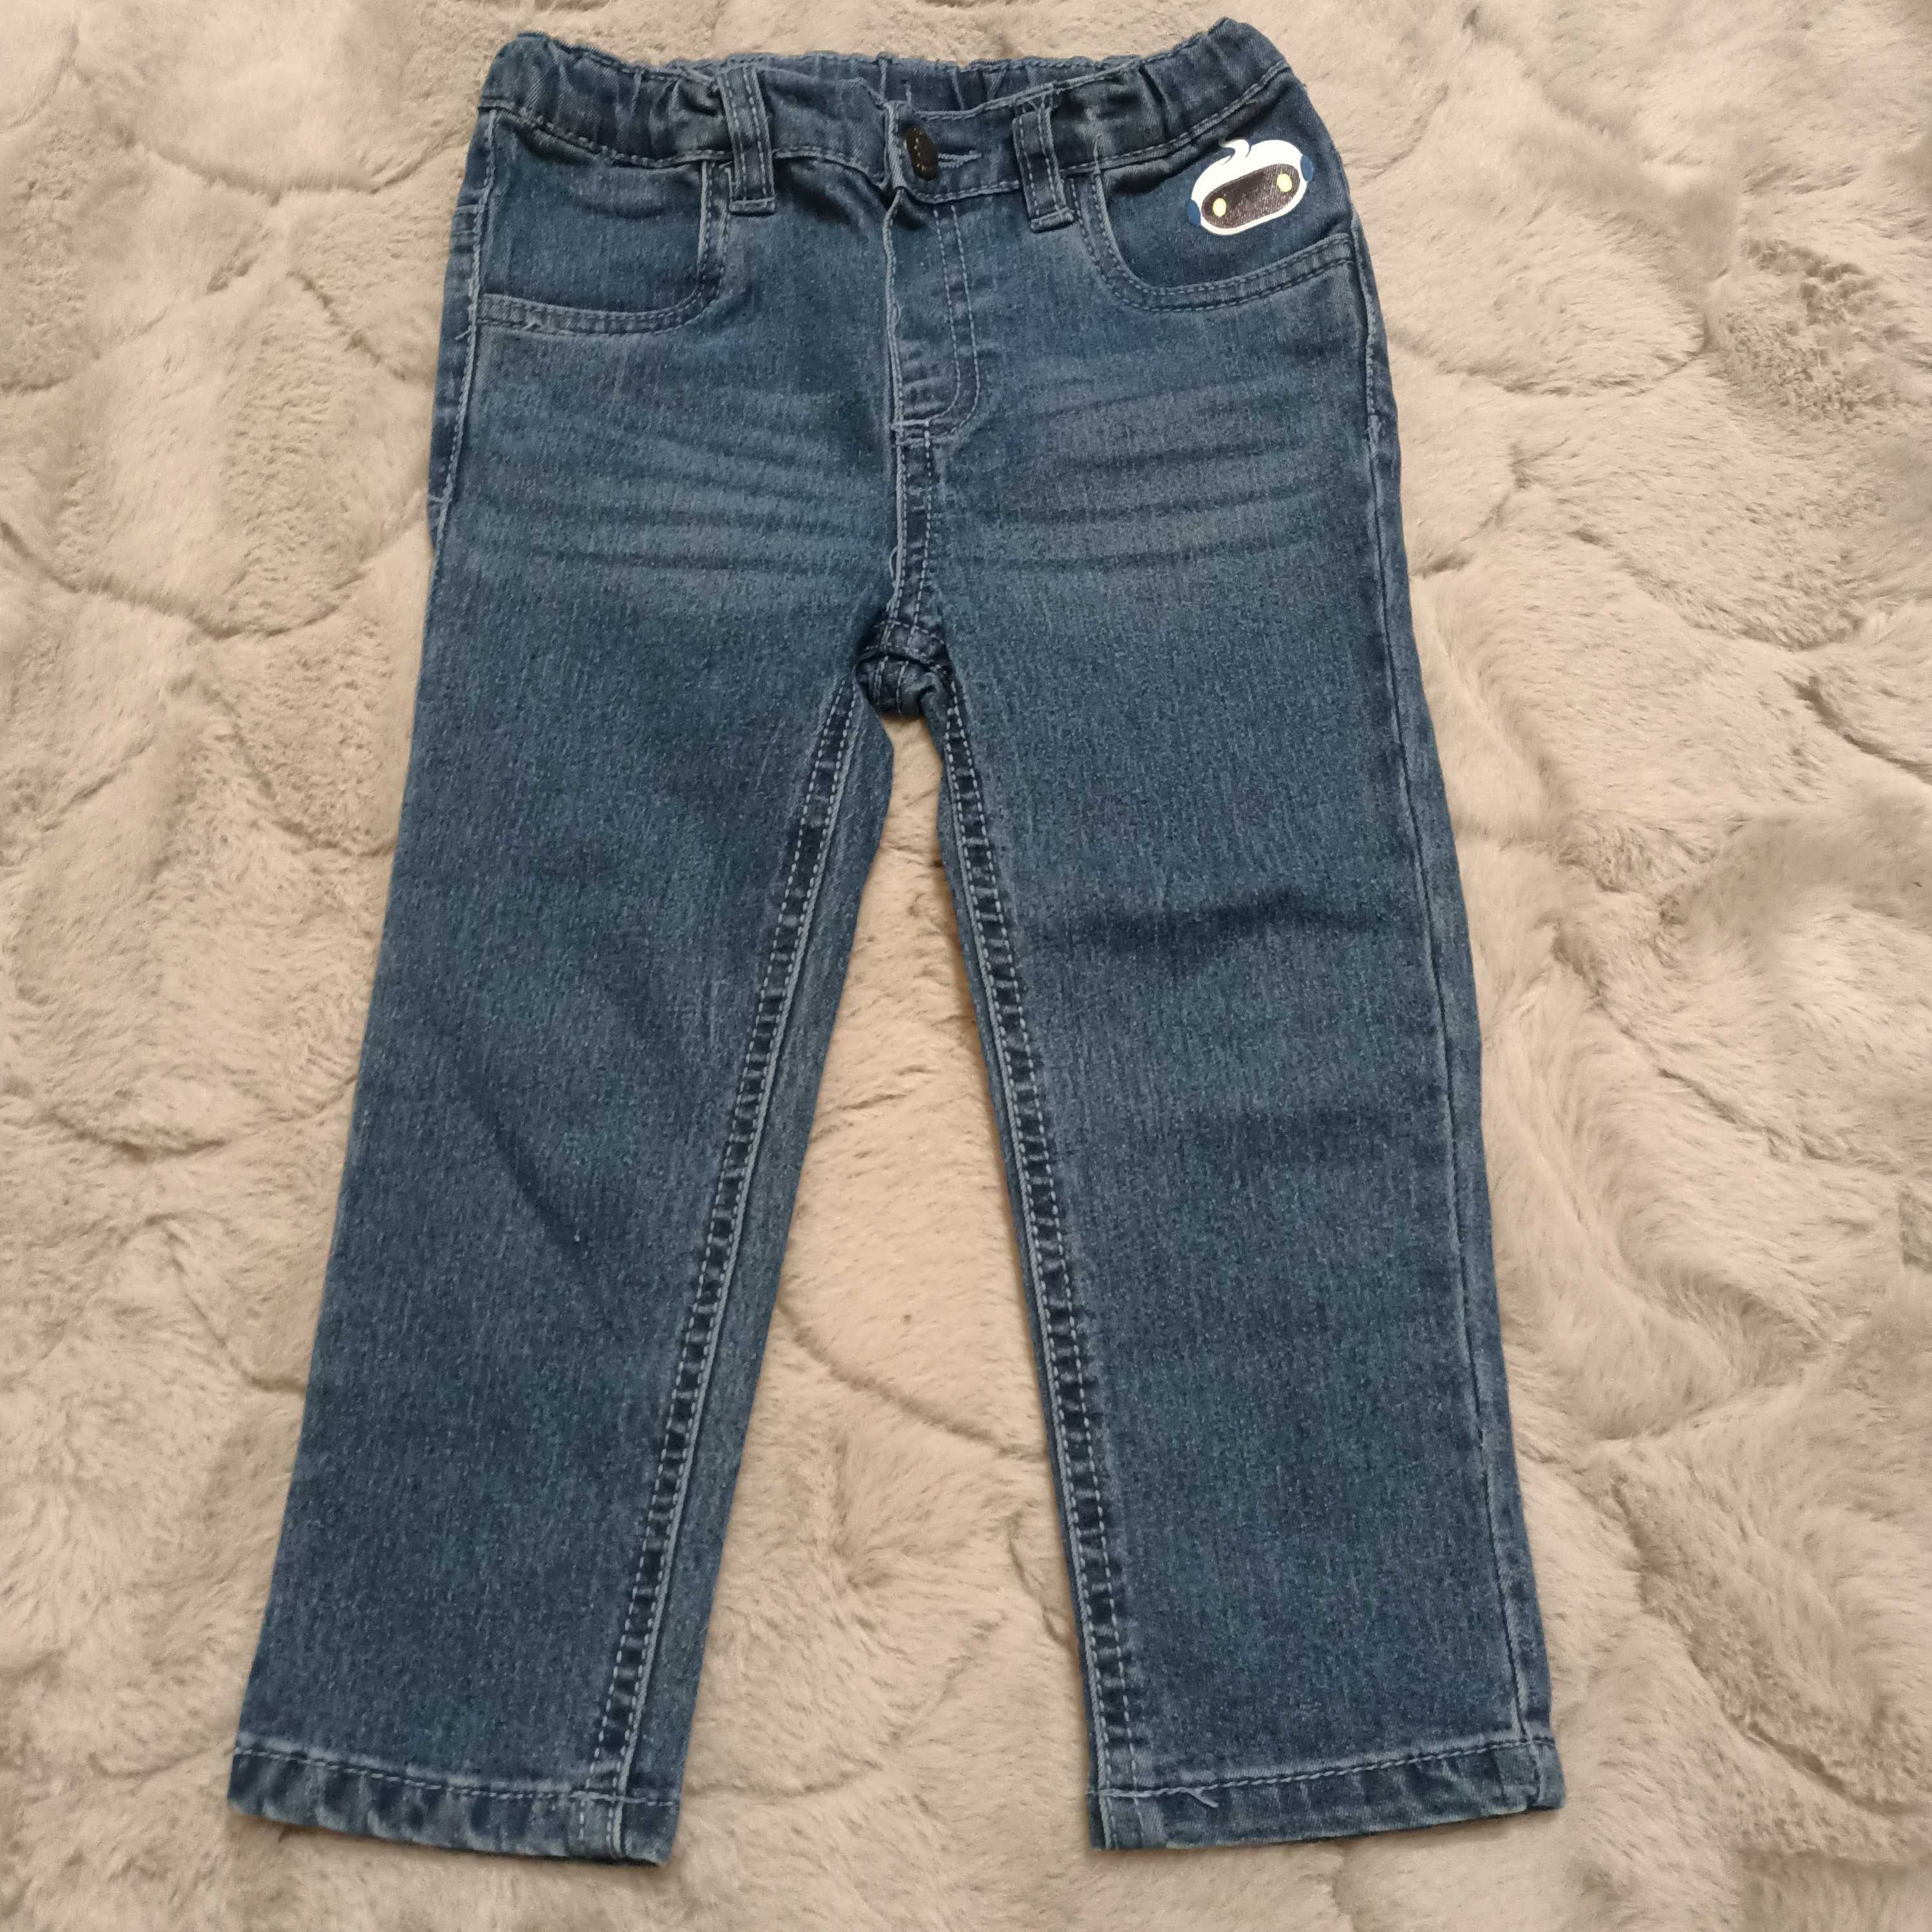 Spodnie jeansowe chłopięce roz 98